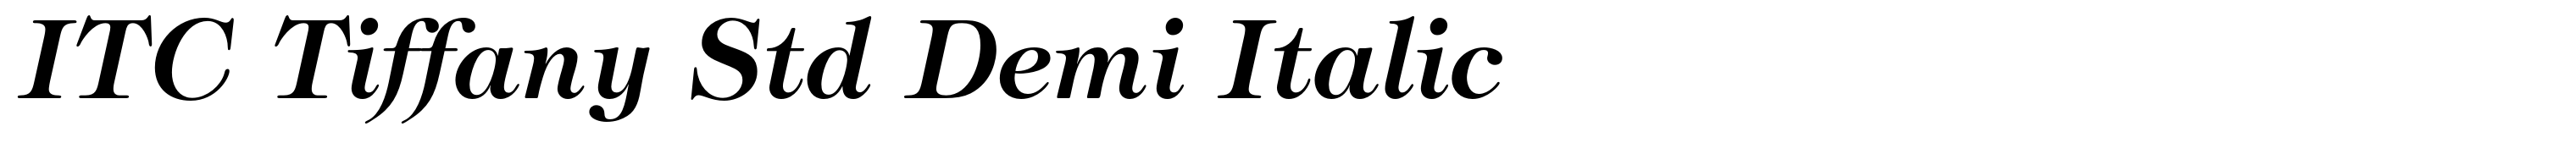 ITC Tiffany Std Demi Italic